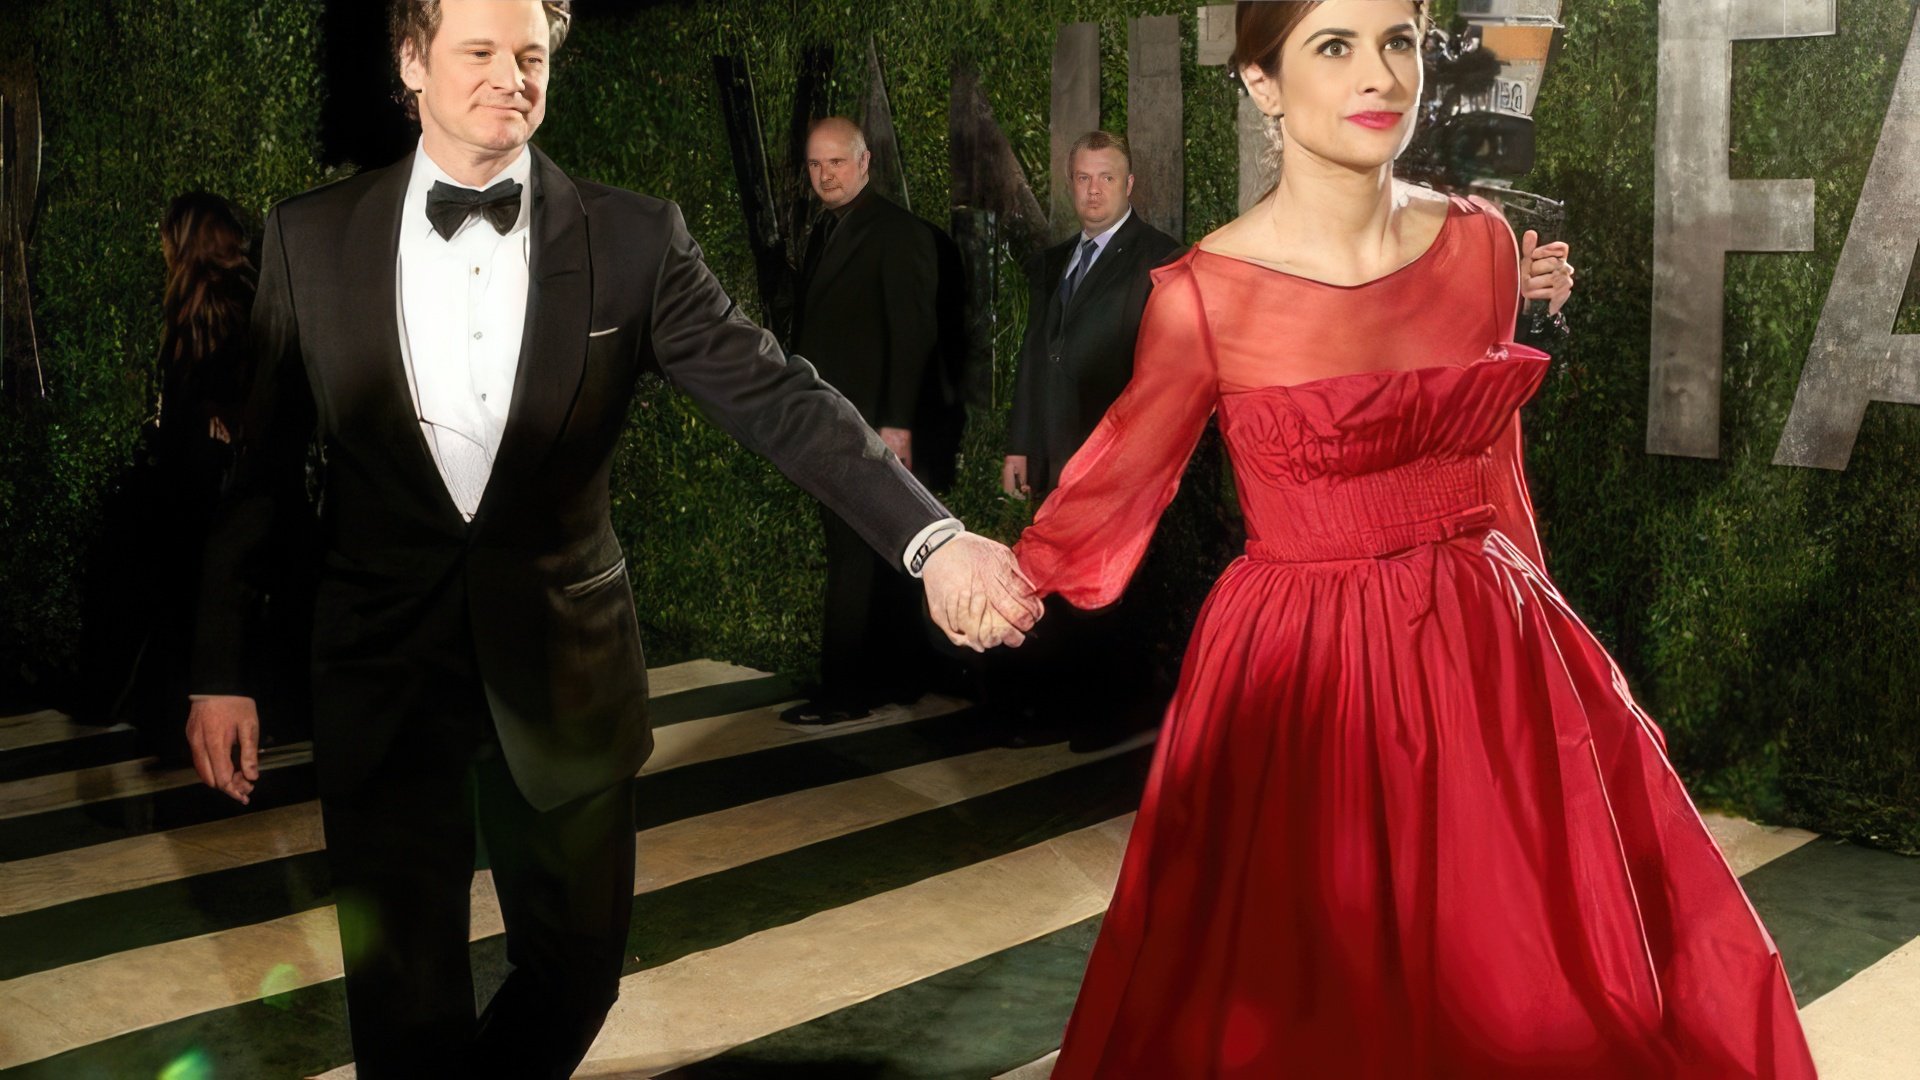 Colin Firth and his wife, Livia Firth (Giuggioli)